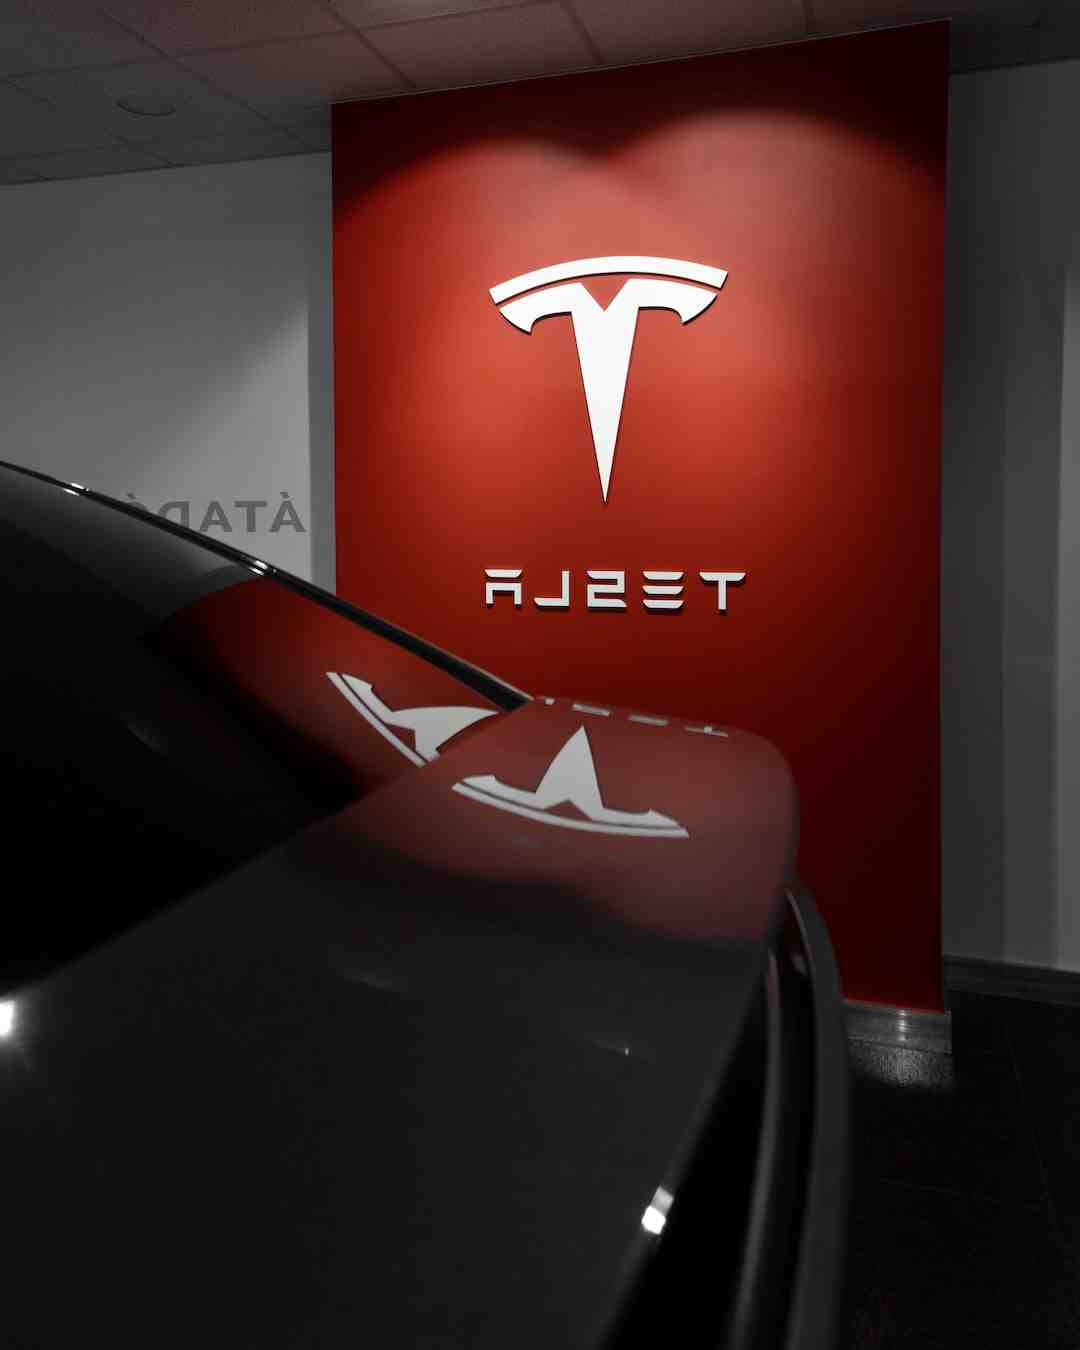 Tesla, le trublion automobile devenu la référence en matière de « hype ».